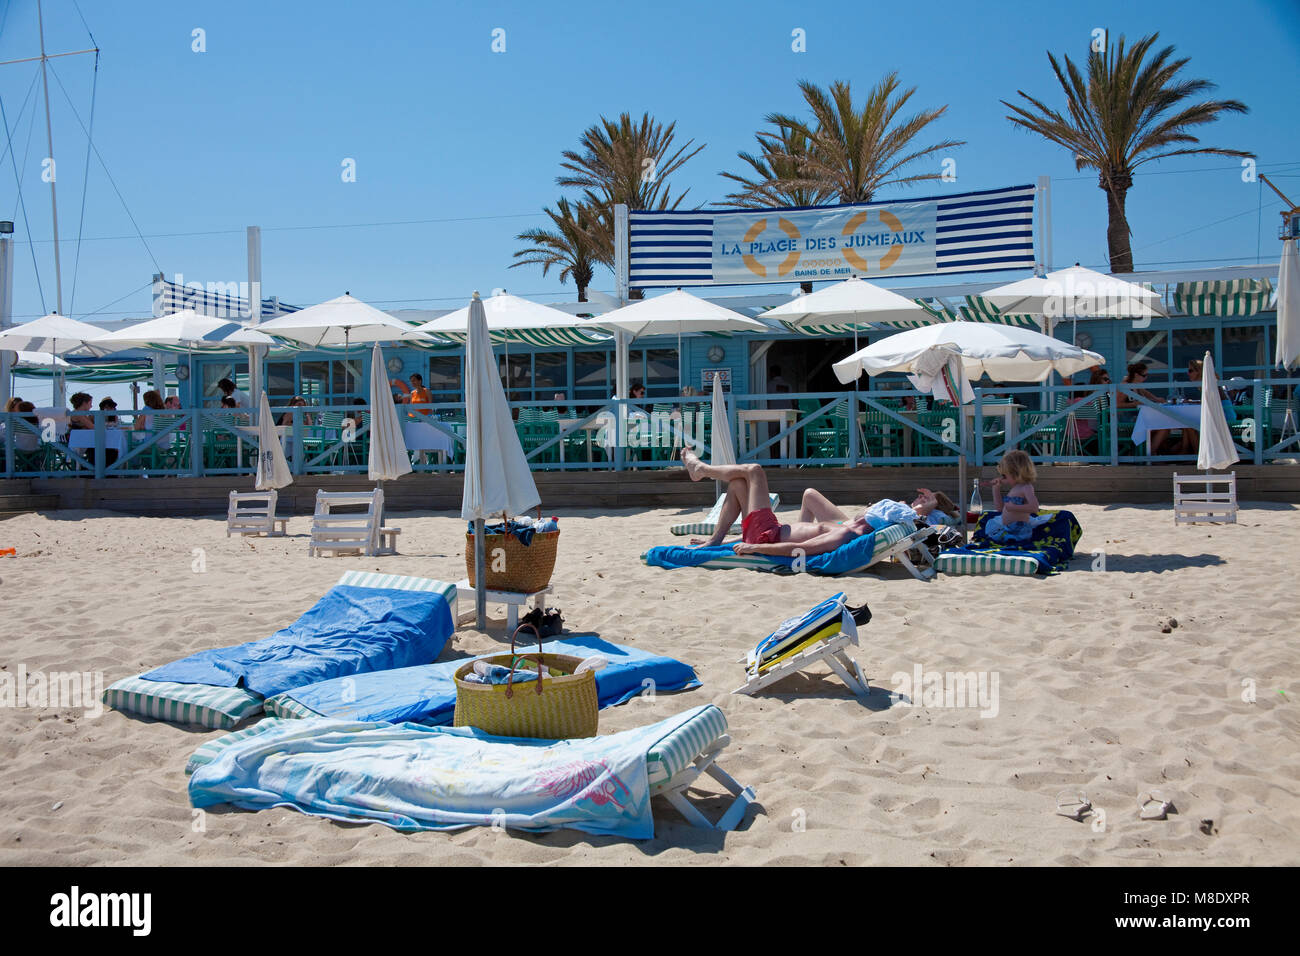 La Plage de Jumeaux, Beach Bar am Strand von Pampelonne, beliebten Strand von Saint Tropez, Côte d'Azur, Südfrankreich, Cote d'Azur, Frankreich, Europa Stockfoto